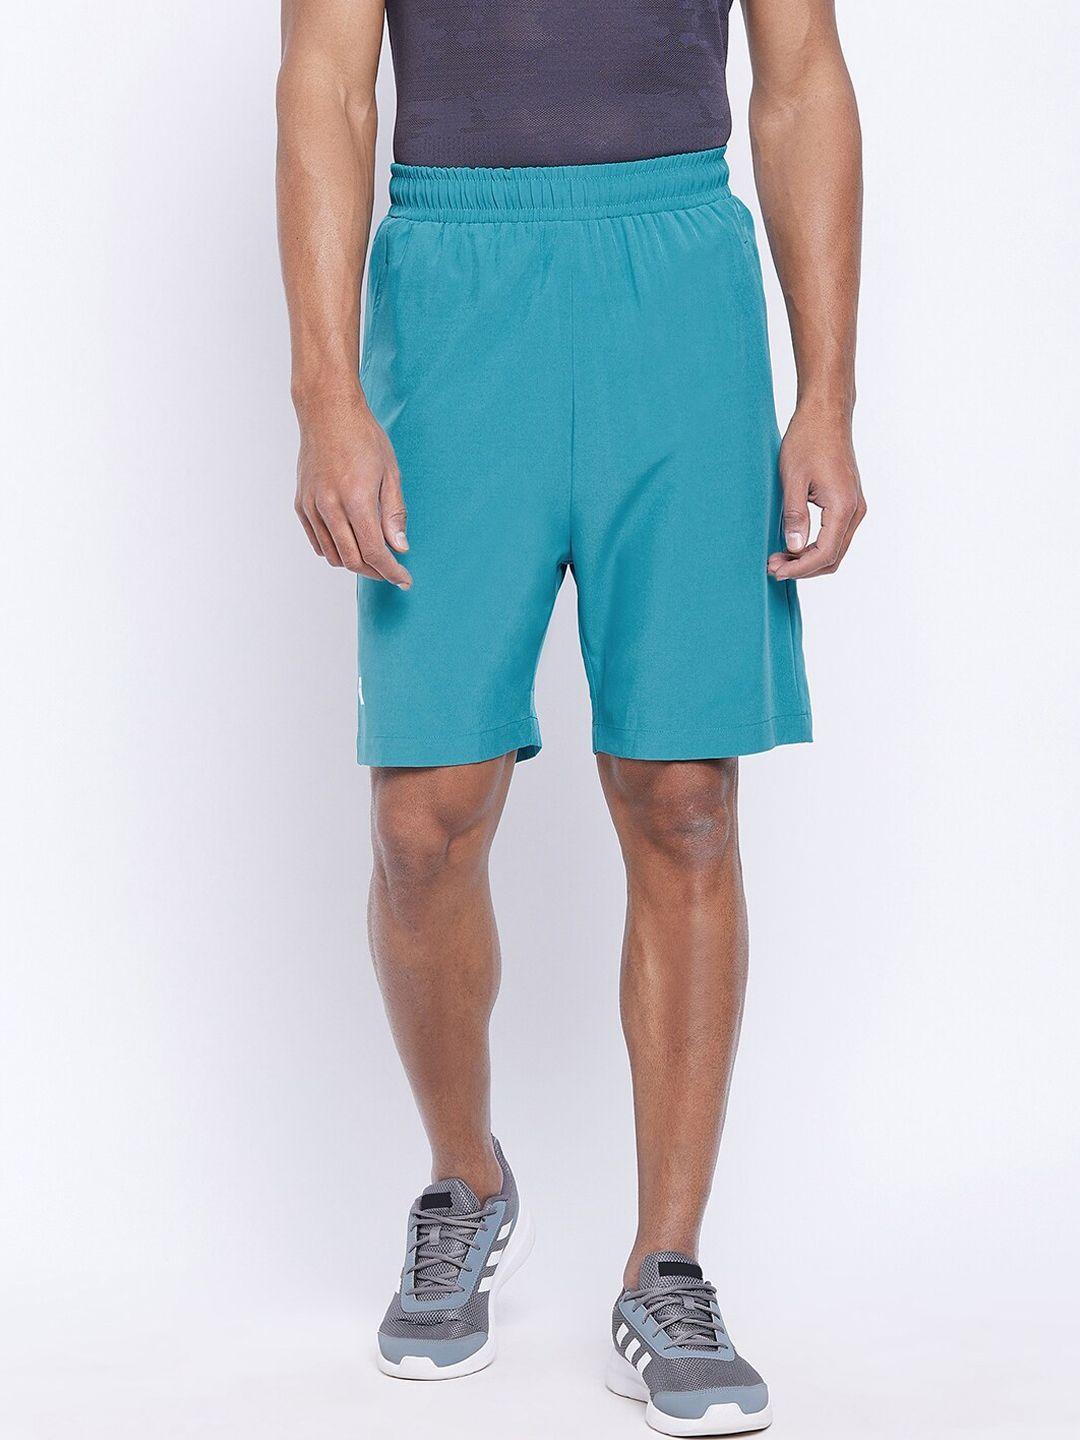 unpar-men-turquoise-blue-outdoor-sports-shorts